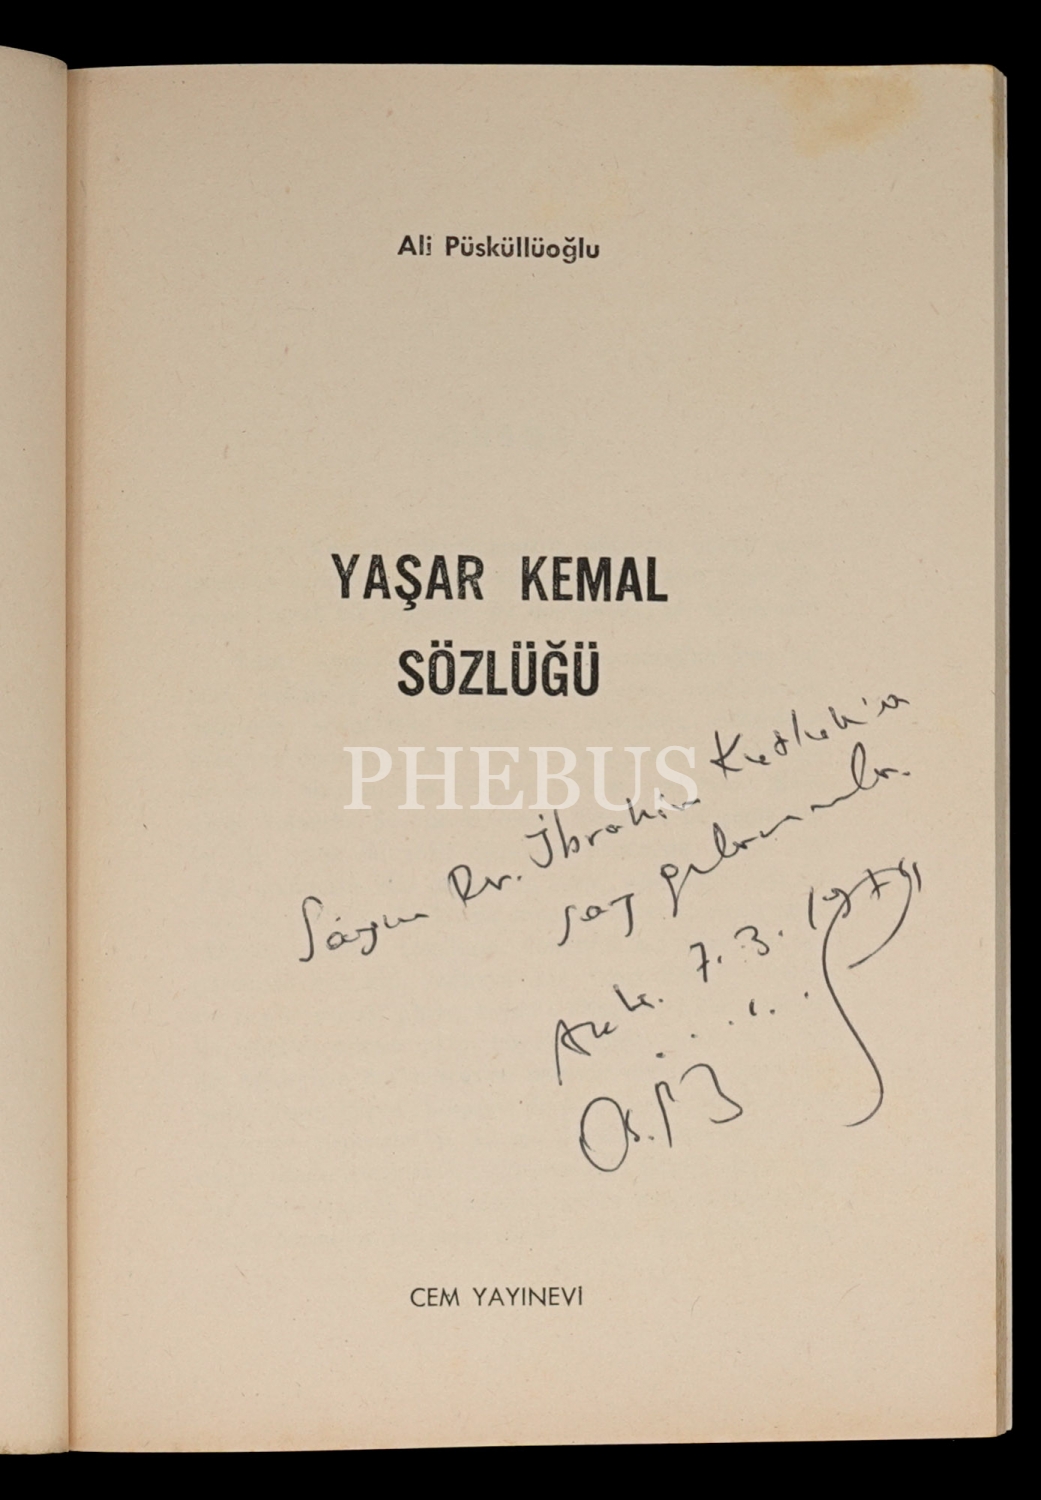 YAŞAR KEMAL SÖZLÜĞÜ, Ali Püsküllüoğlu, 1974, 96 sayfa, Cem Yayınevi, 14x20 cm...